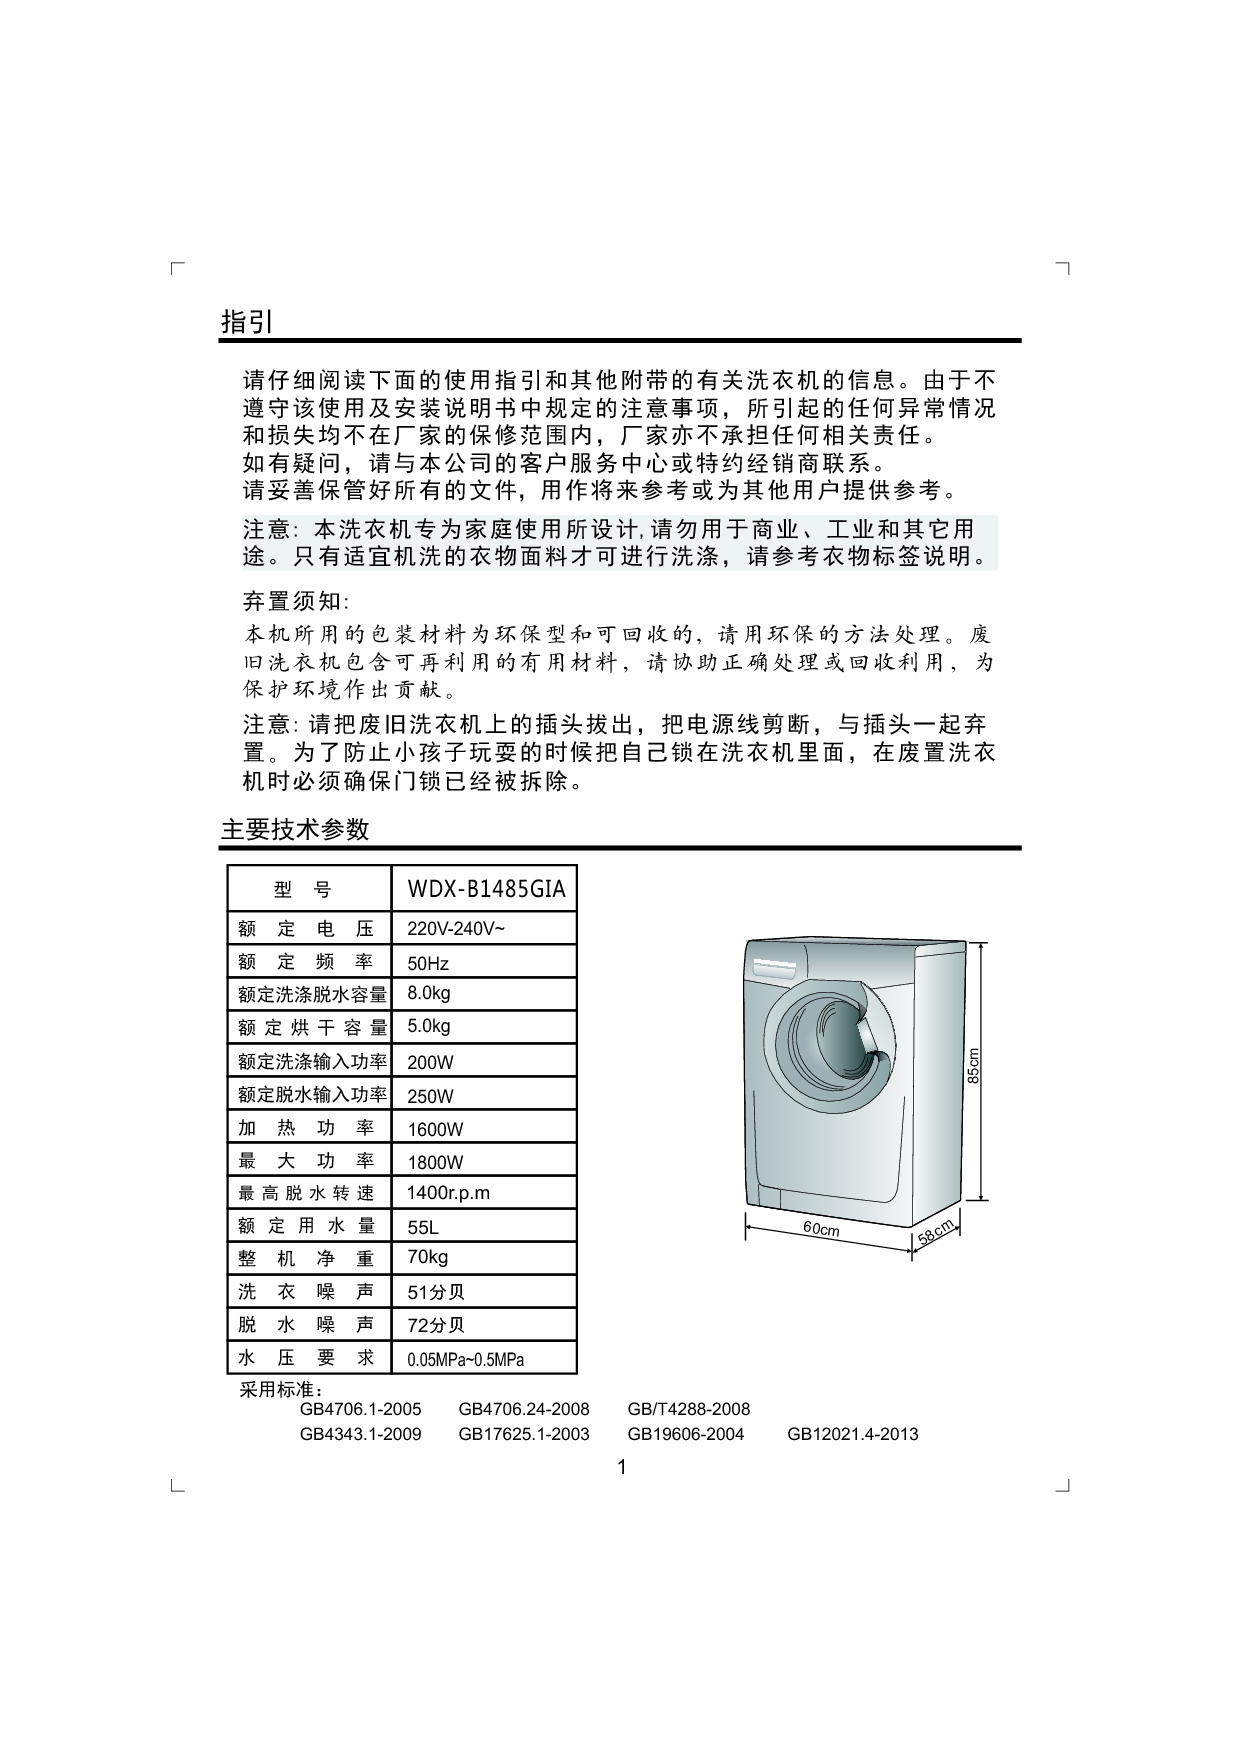 金羚 Jinling WDX-B1485GIA 使用说明书 第1页